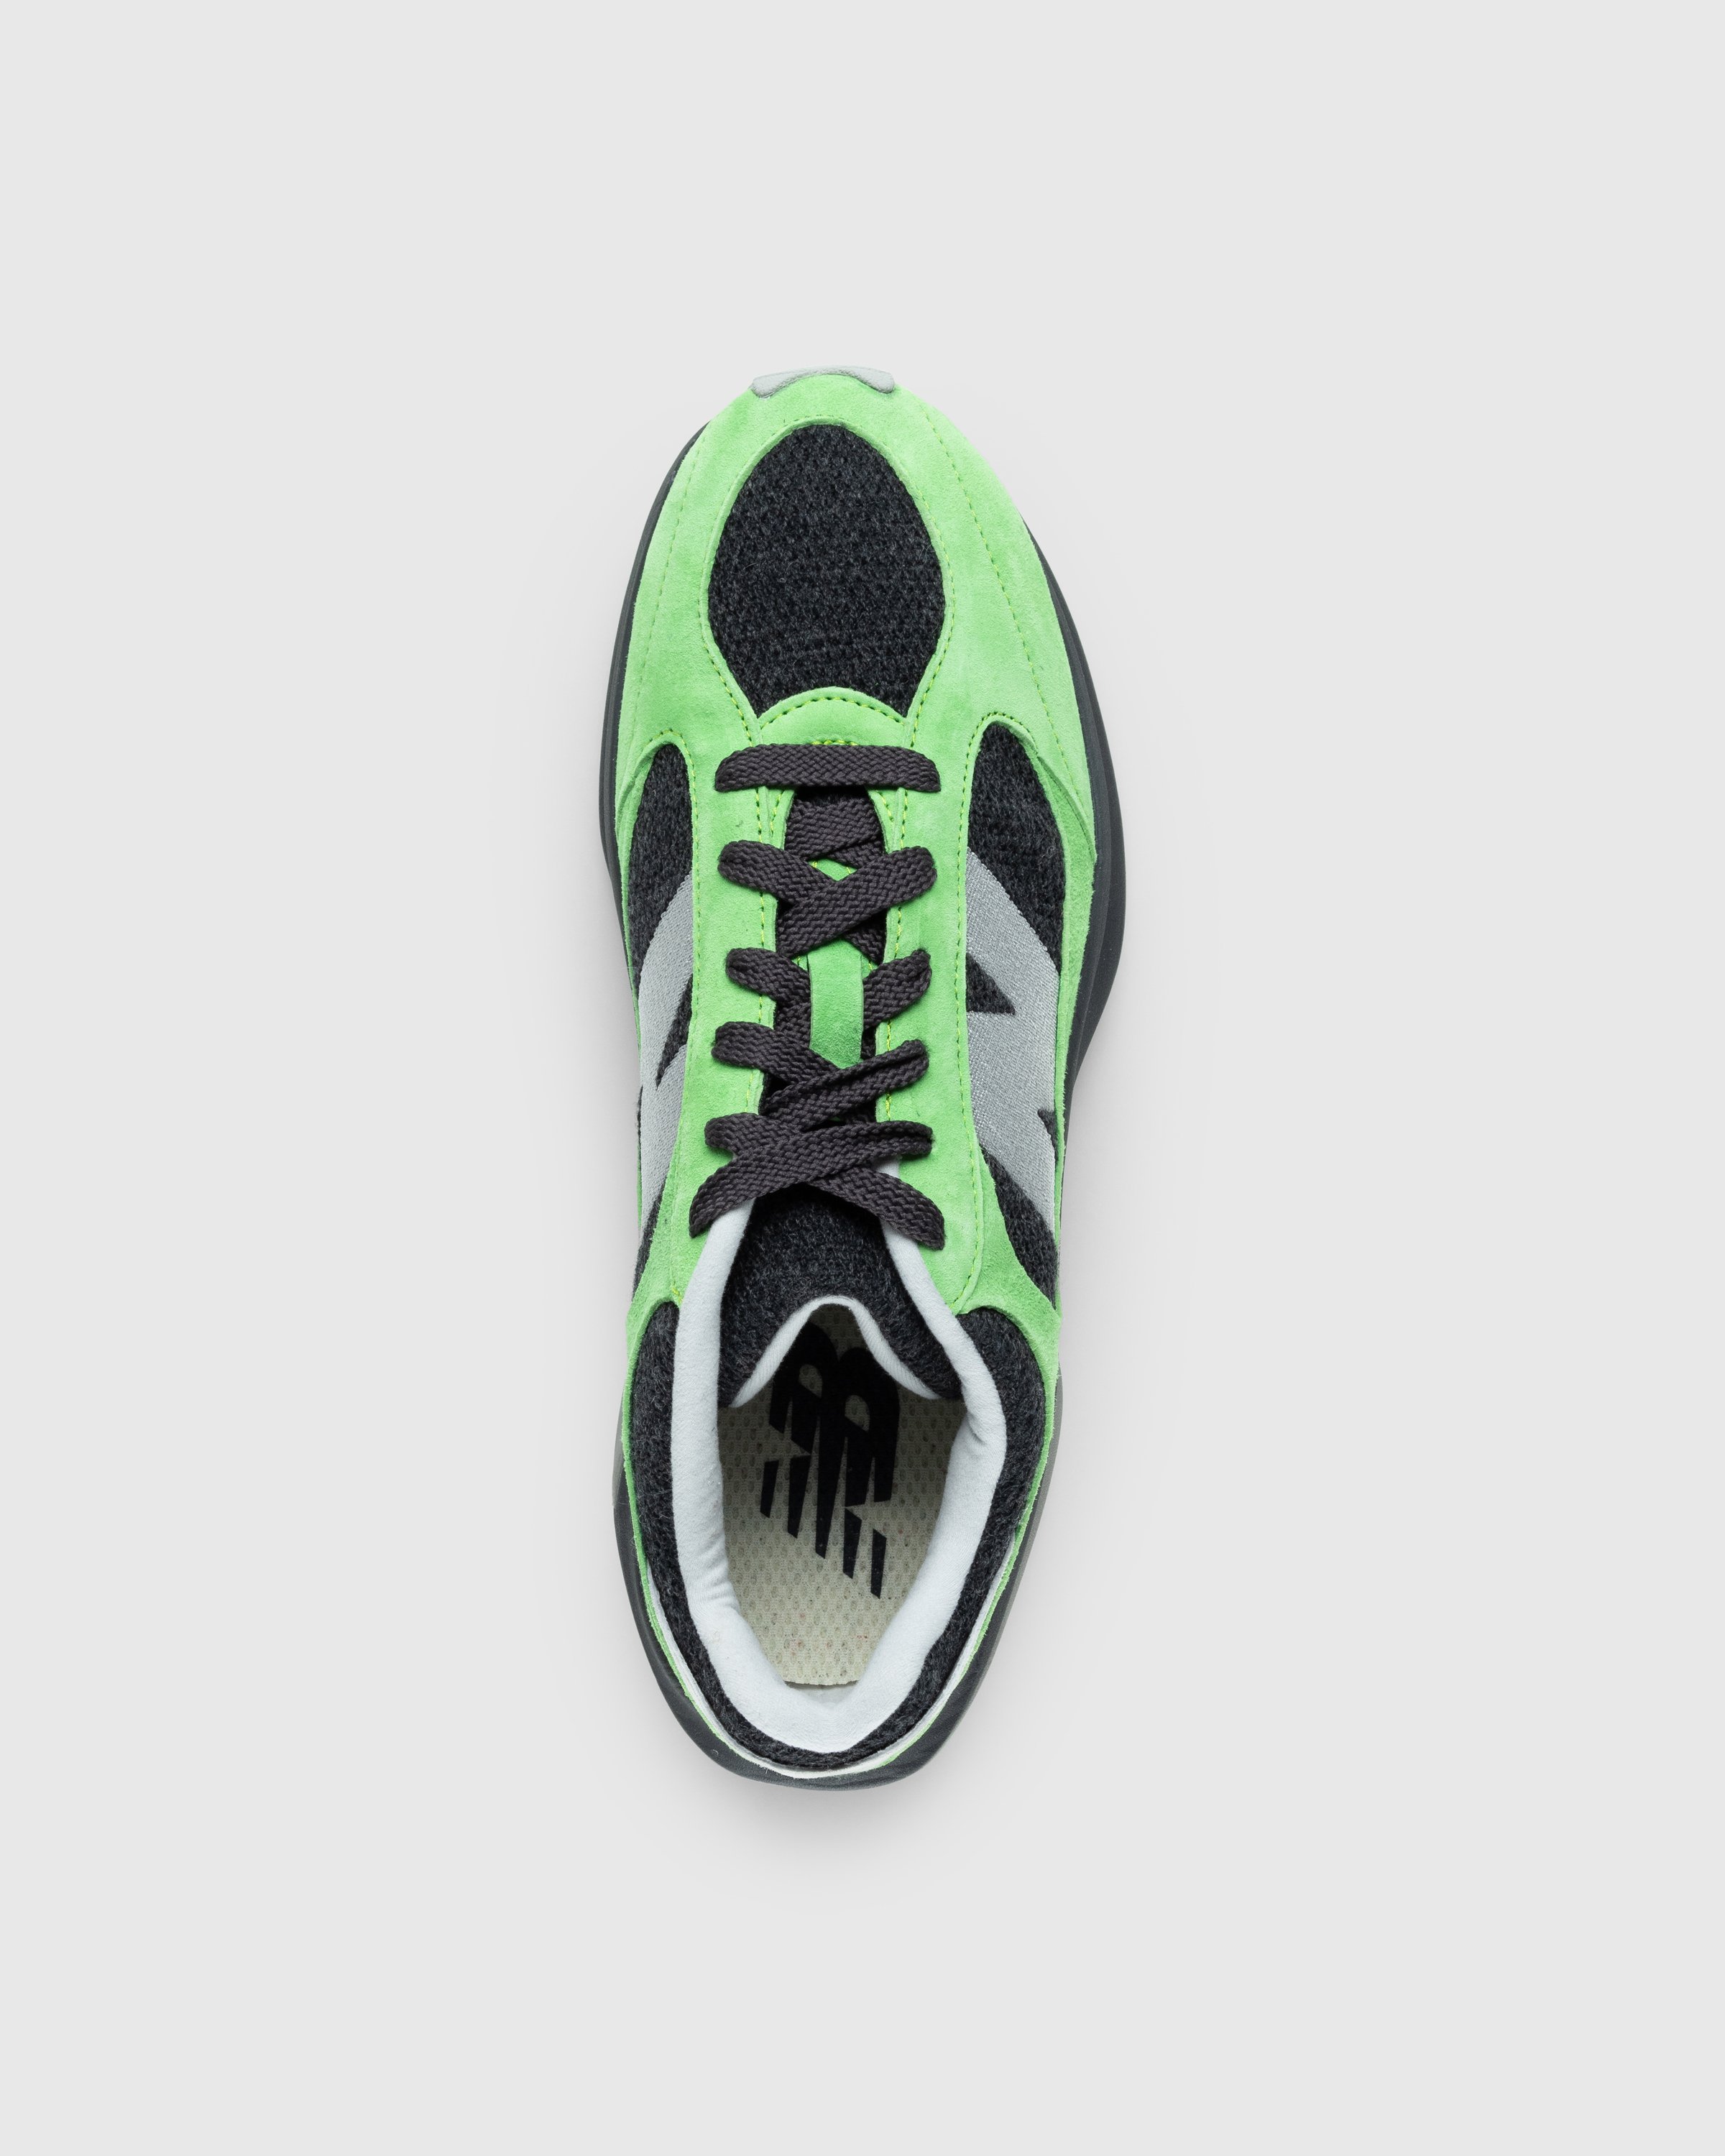 New Balance - WRPD Runner Green/Summer Fog - Footwear - Green - Image 5